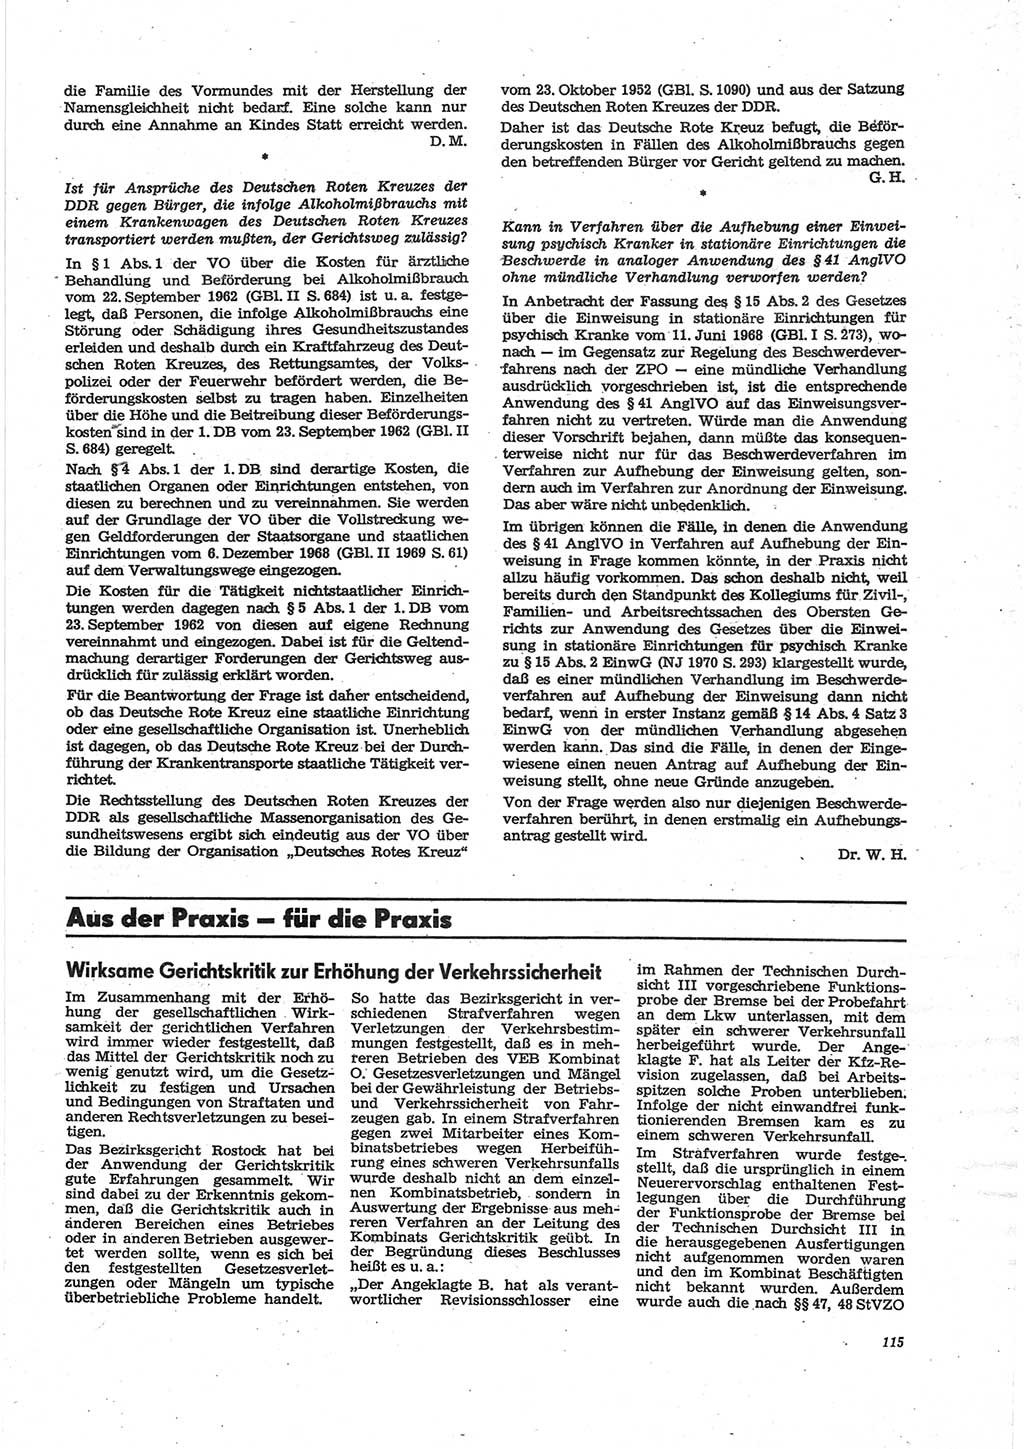 Neue Justiz (NJ), Zeitschrift für Recht und Rechtswissenschaft [Deutsche Demokratische Republik (DDR)], 28. Jahrgang 1974, Seite 115 (NJ DDR 1974, S. 115)